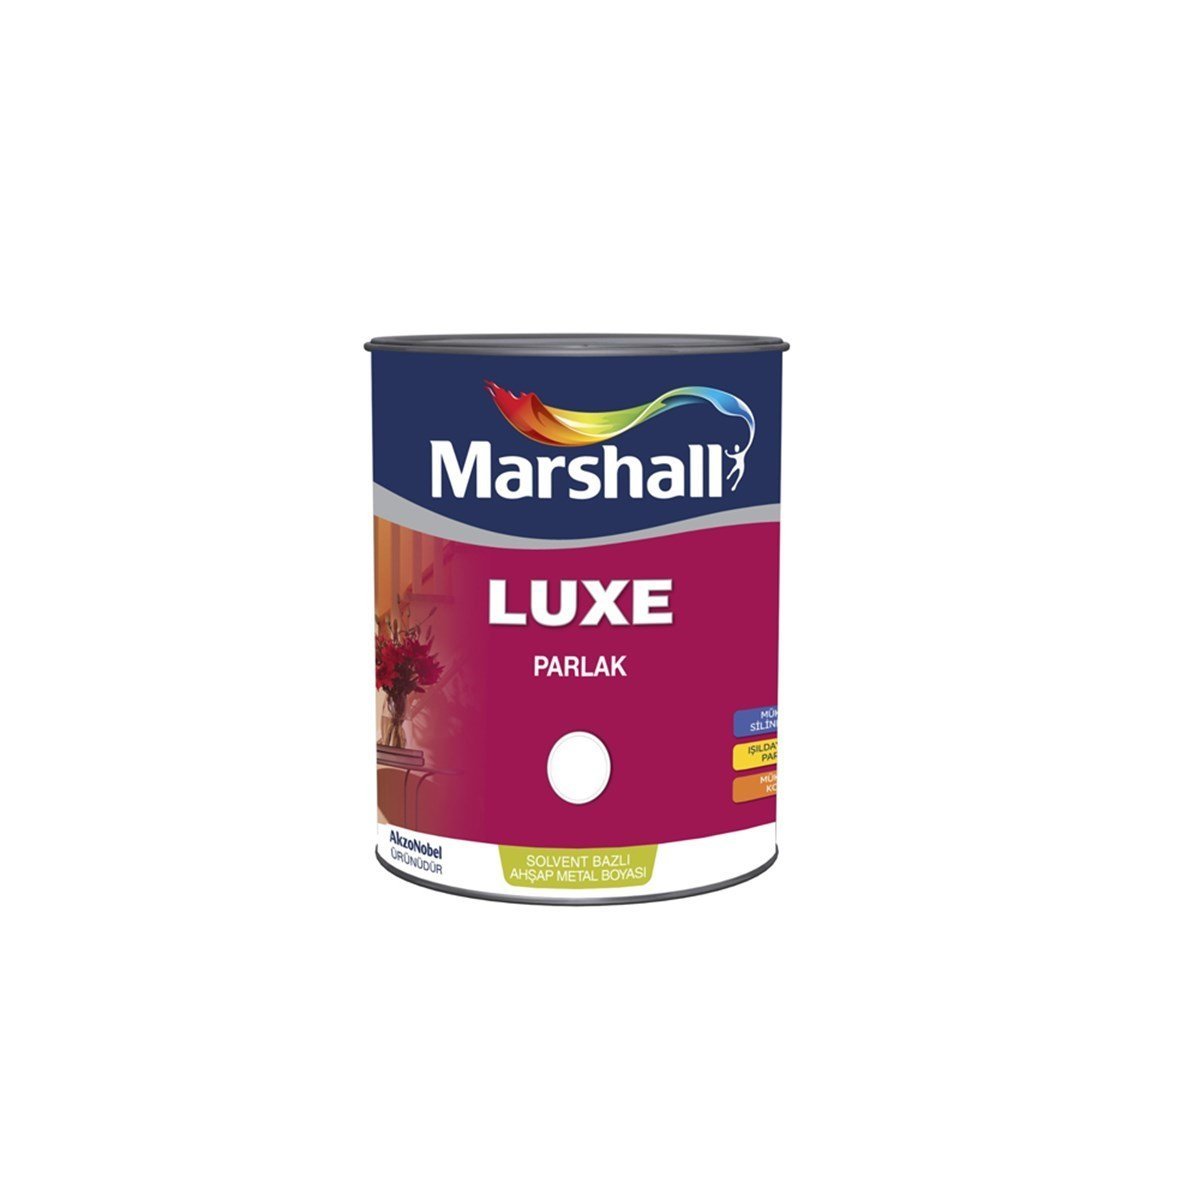 Marshall Luxe Parlak Sentetik Yağlı Boya Özel Renkler